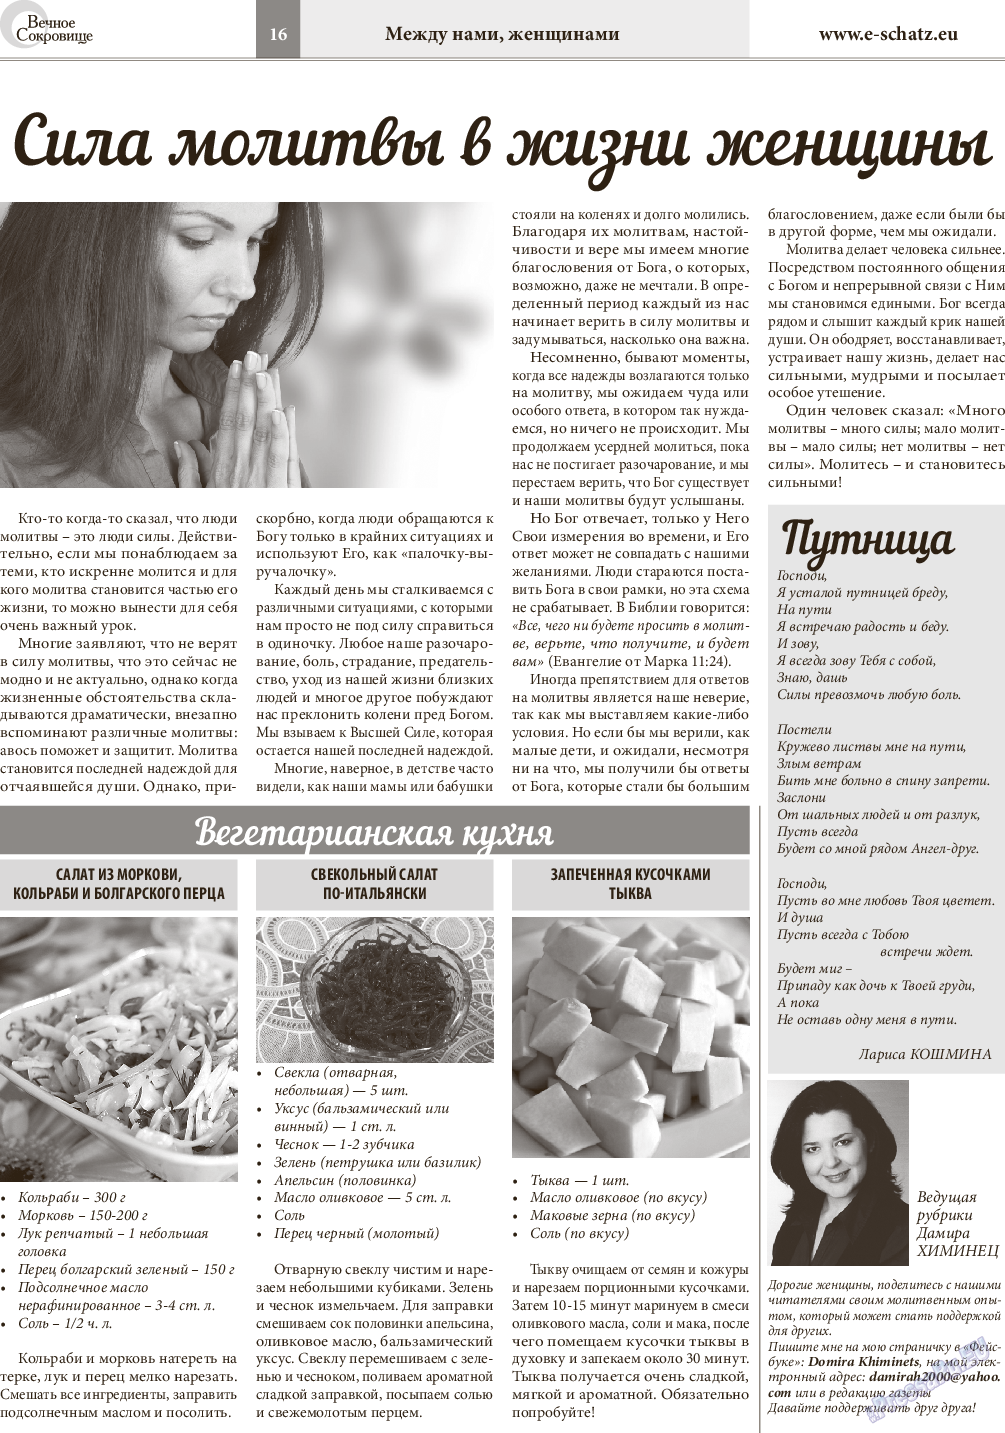 Вечное сокровище (газета). 2015 год, номер 5, стр. 16